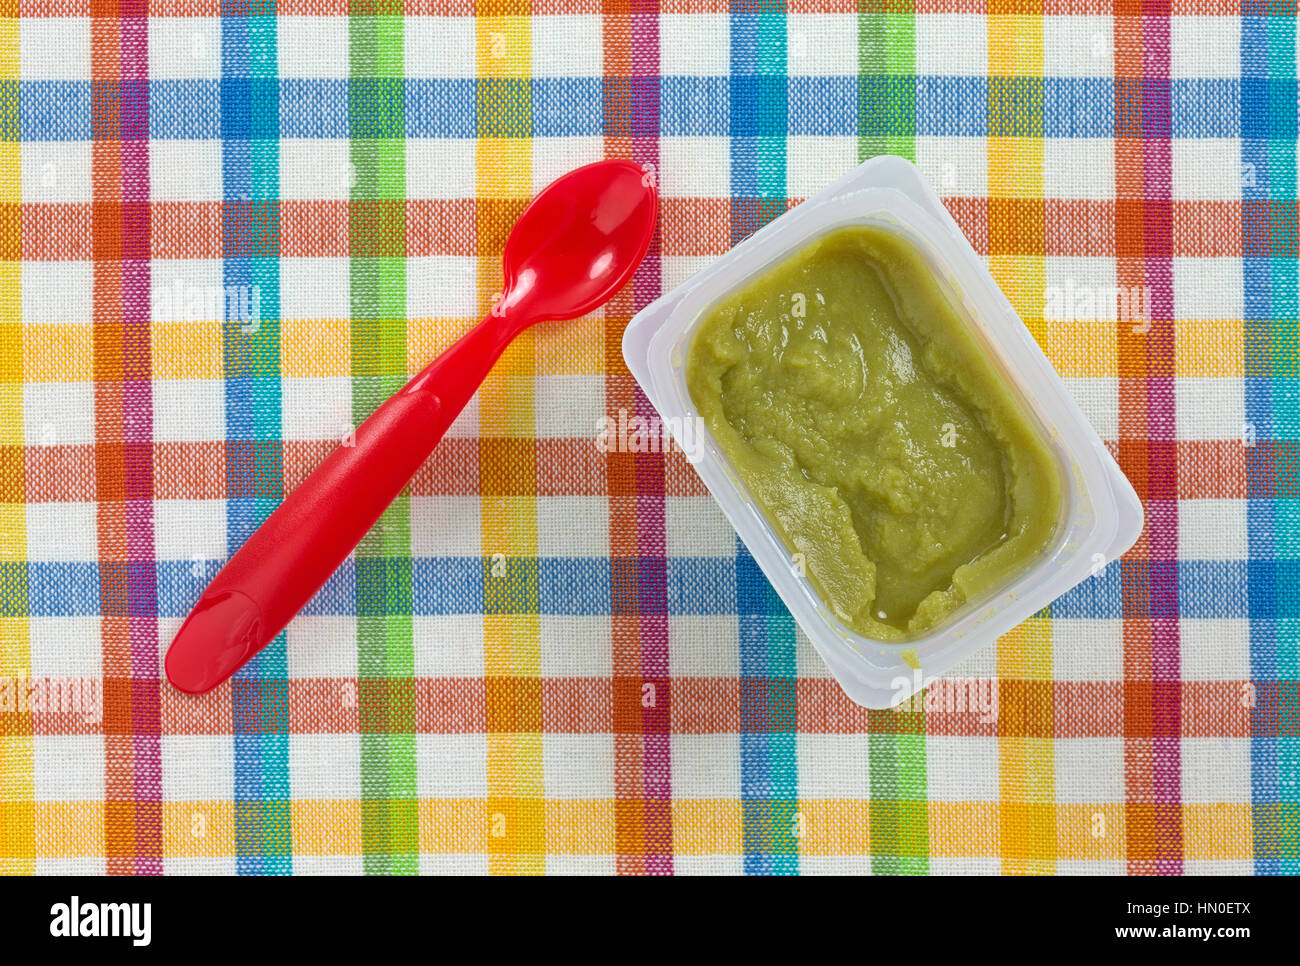 Draufsicht auf eine Portion grüne Erbsen Babynahrung in einem kleinen Plastikbehälter mit einem roten Löffel auf die Seite auf einem bunten Tischset. Stockfoto